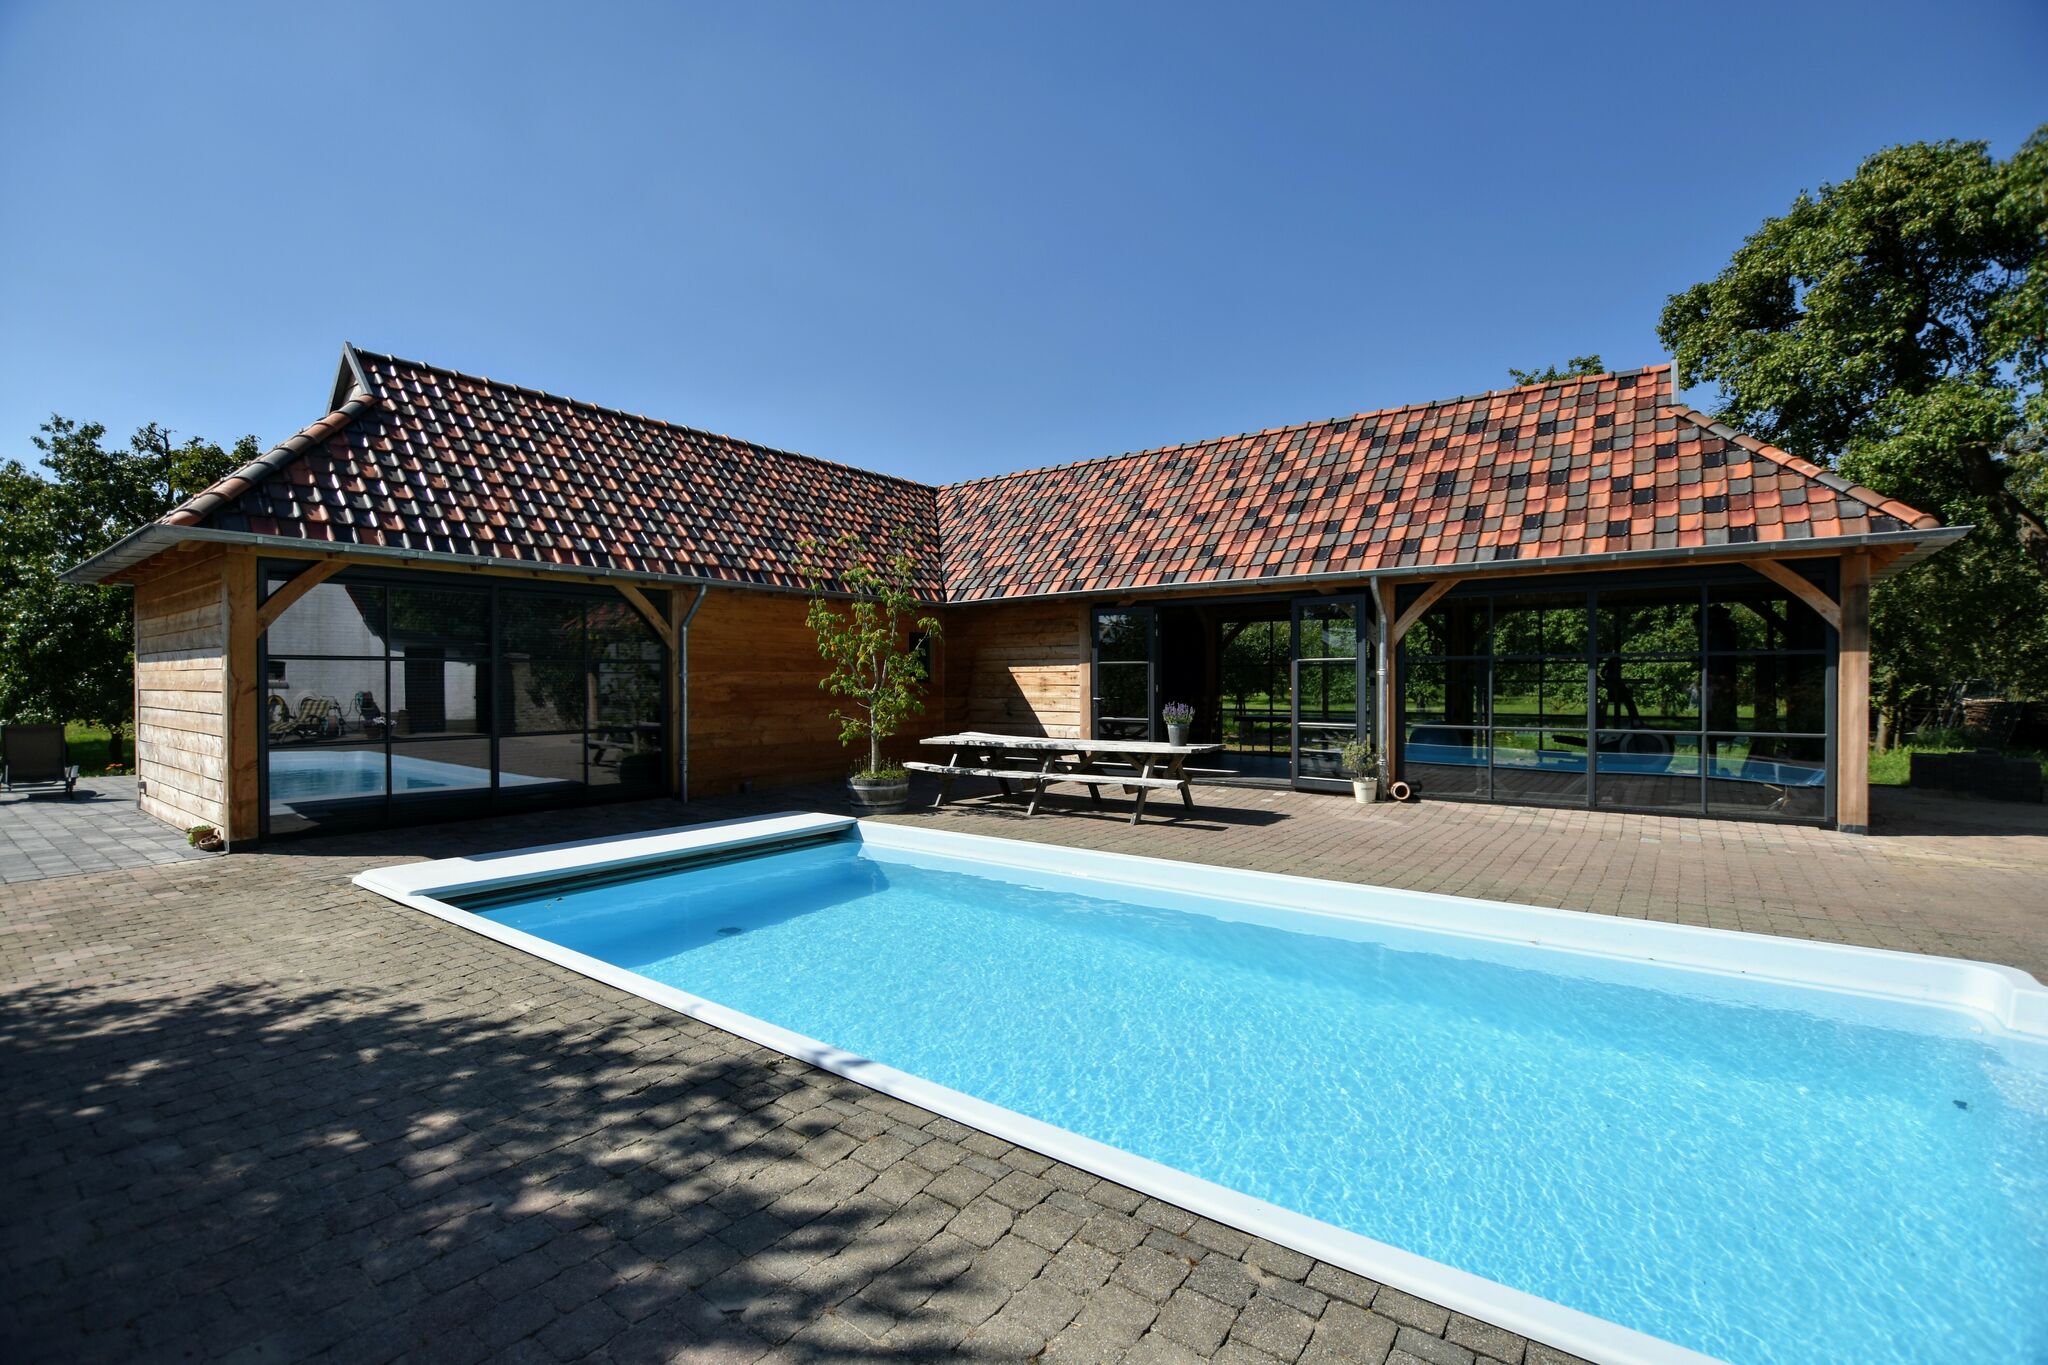 Ruim vakantiehuis in Herveld met bubbelbad